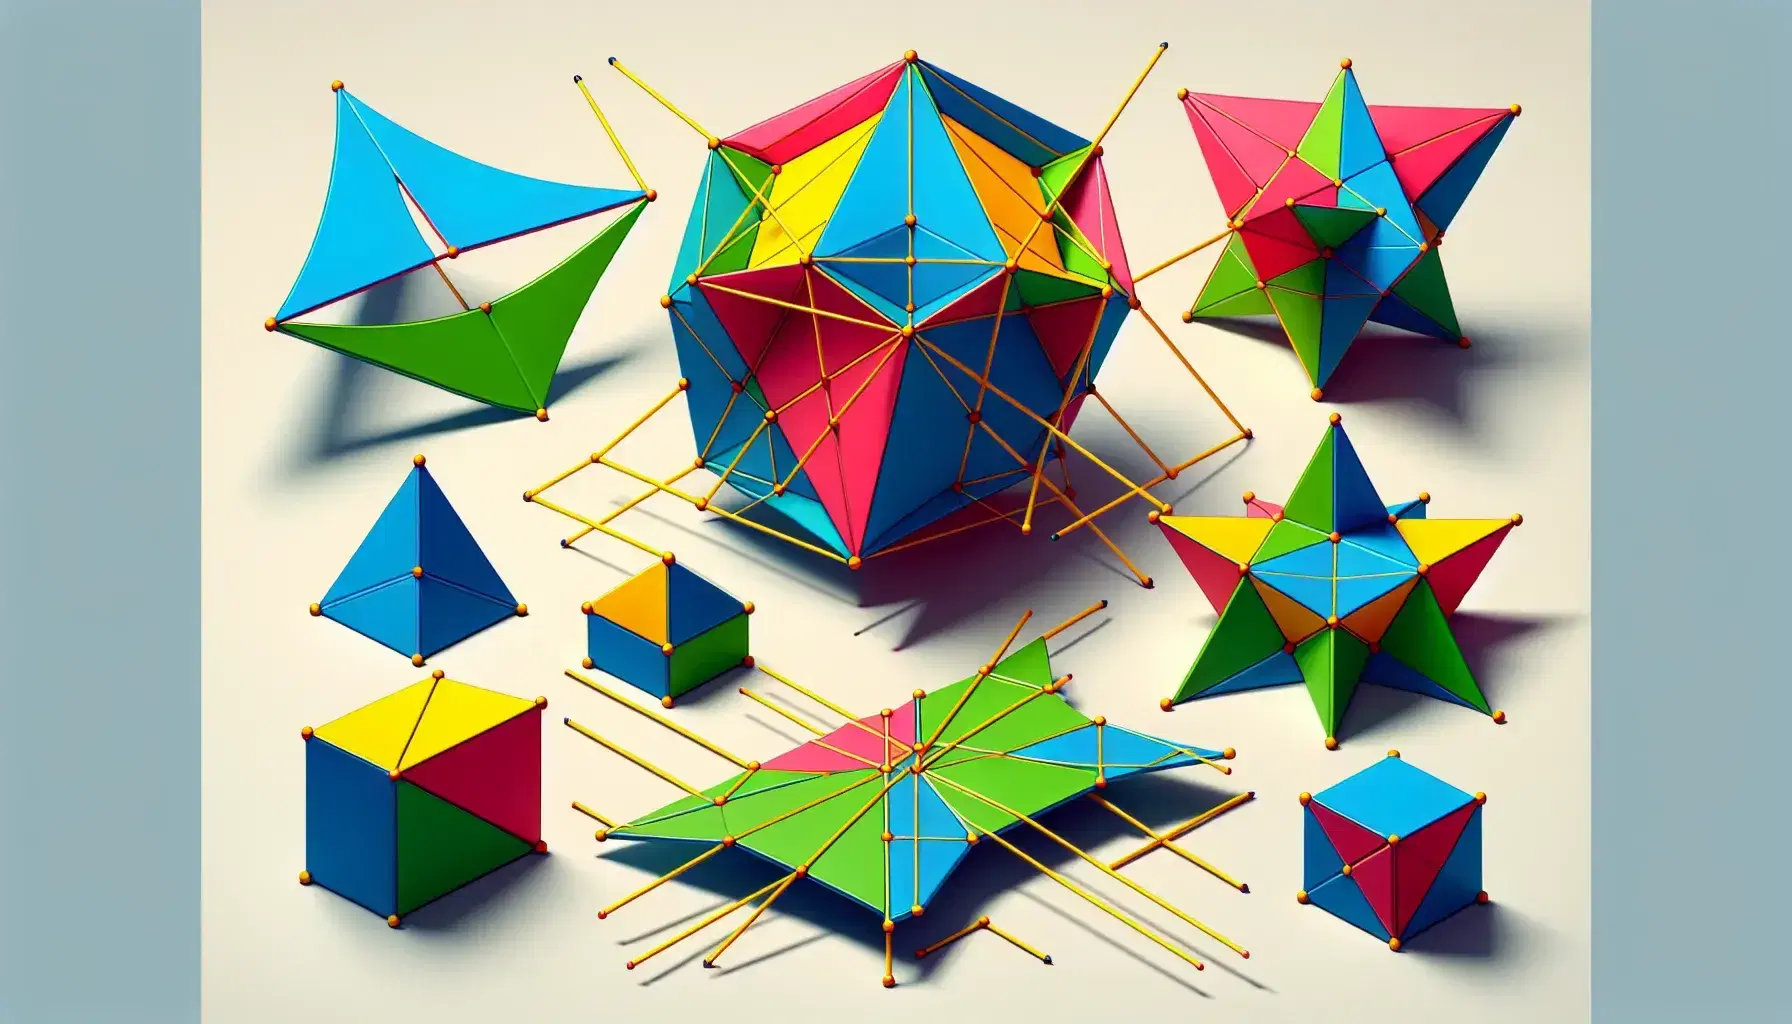 Colección de polígonos geométricos de colores vivos con diagonales, ángulos internos y externos marcados, destacando la simetría y diversidad de formas.